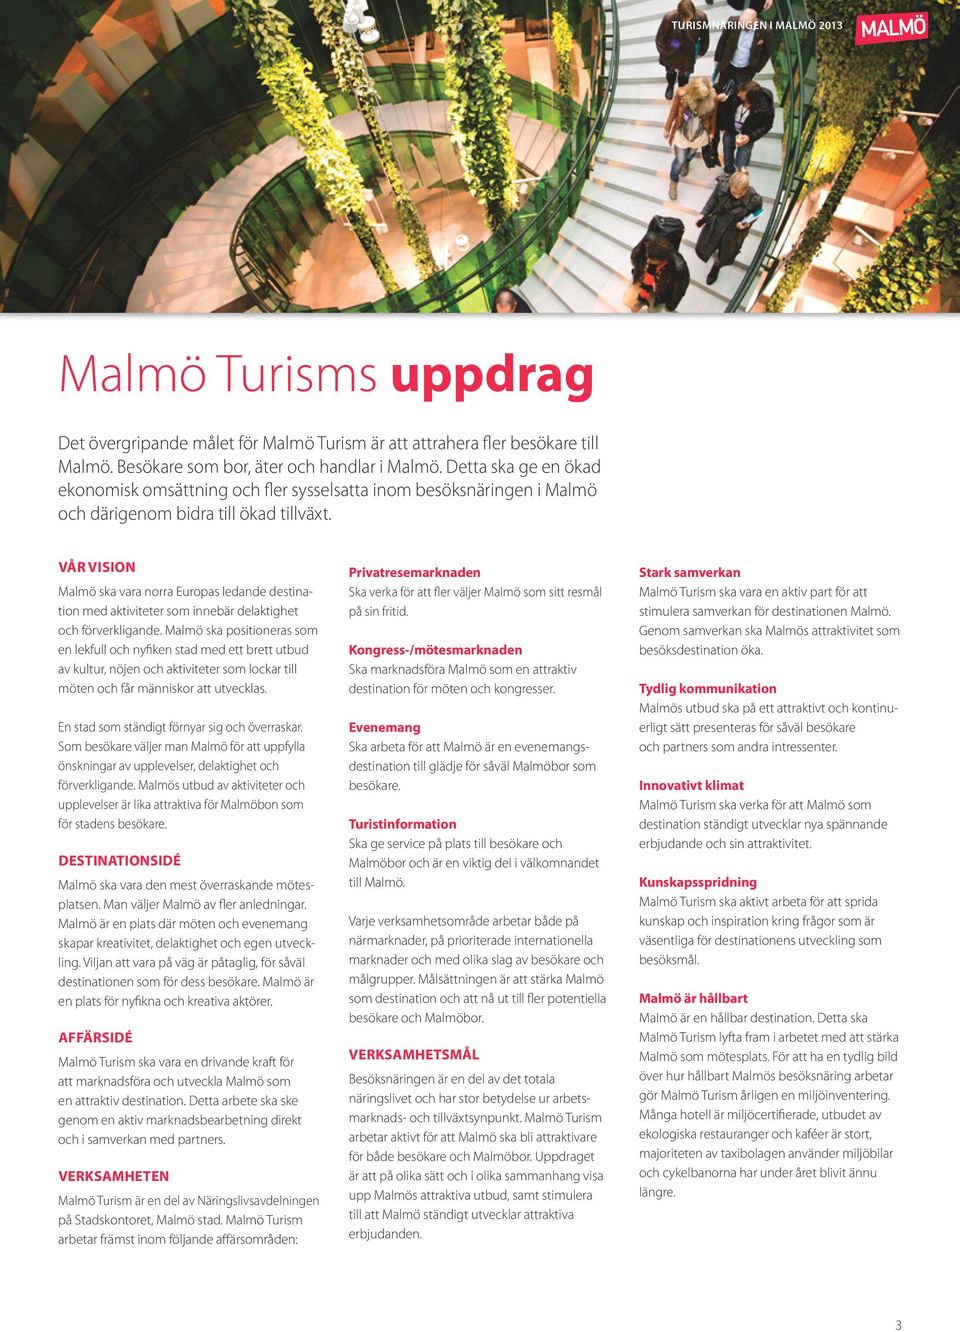 VÅR VISION Malmö ska vara norra Europas ledande destination med aktiviteter som innebär delaktighet och förverkligande.